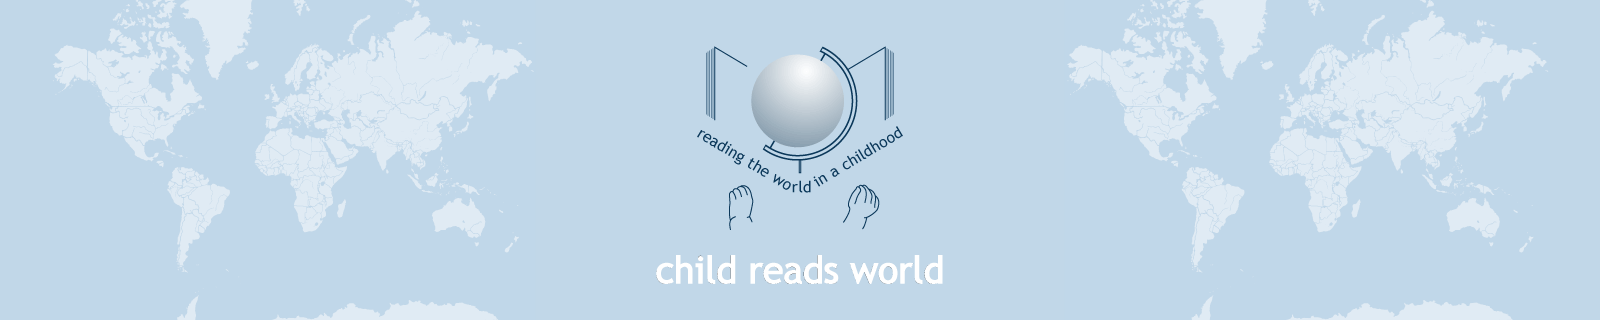 child reads world